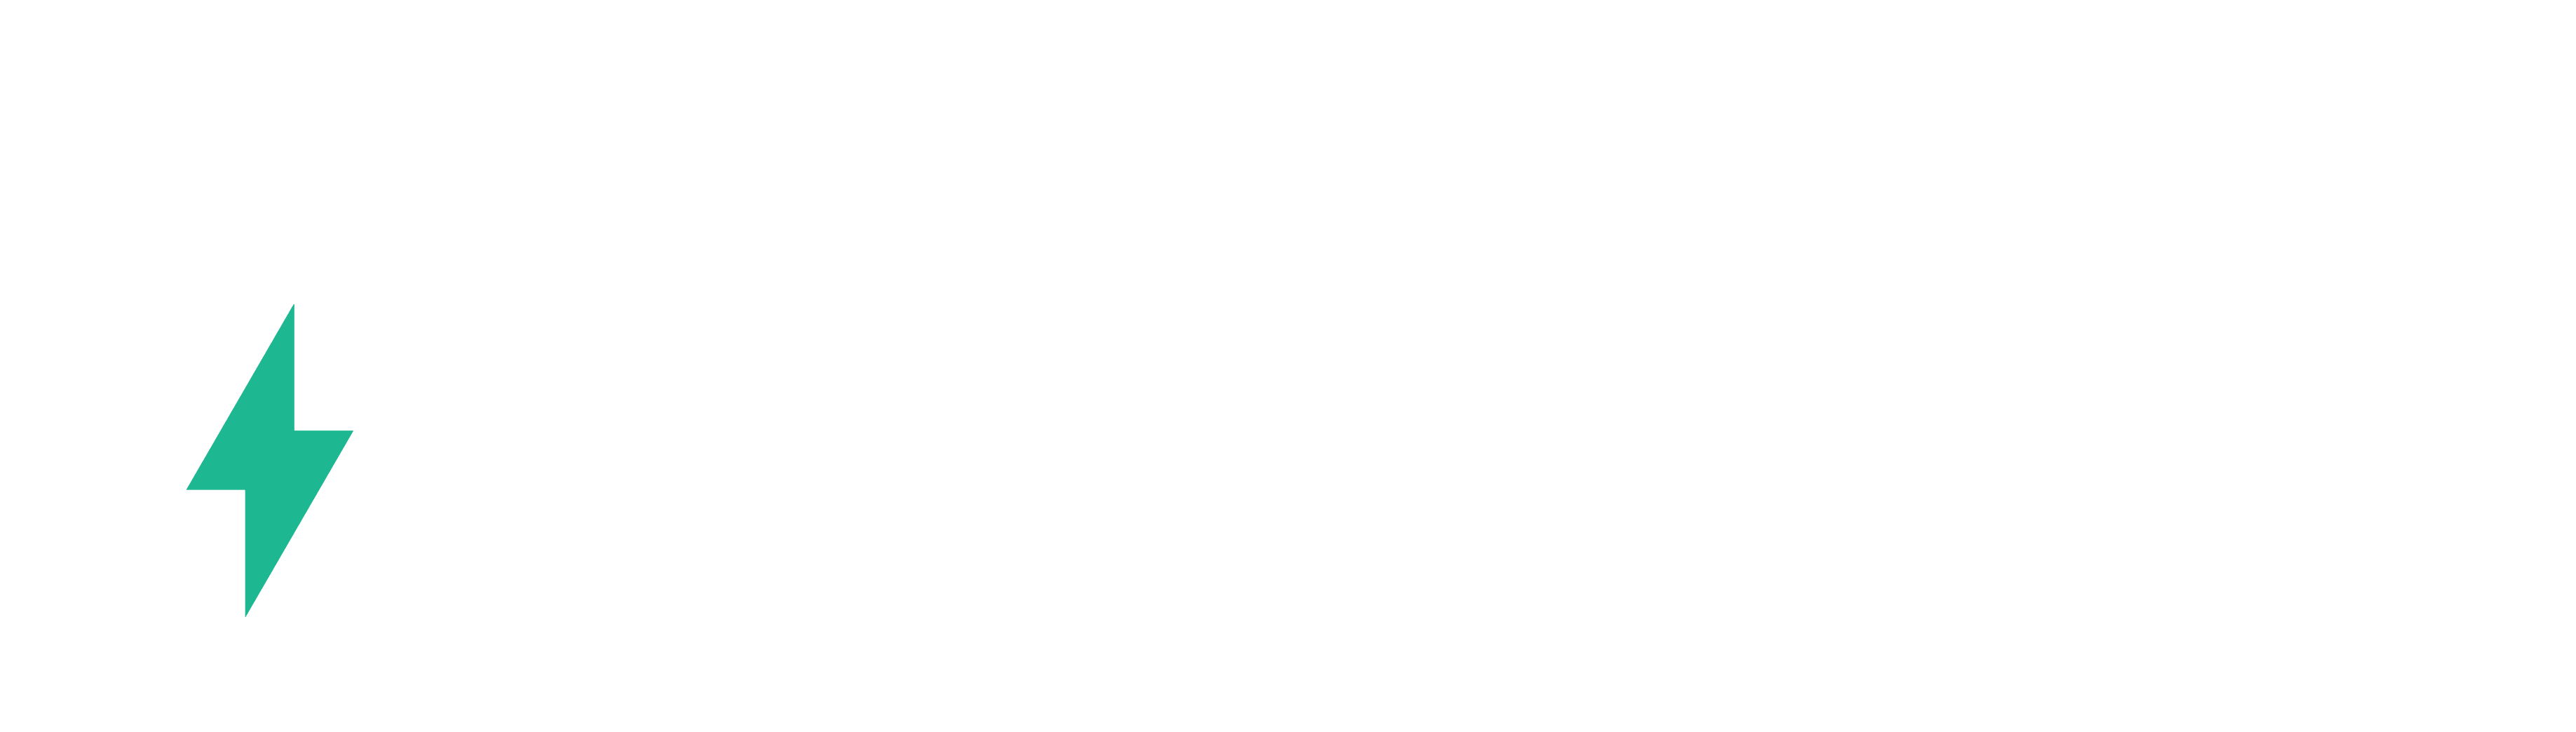 eavi brand logo